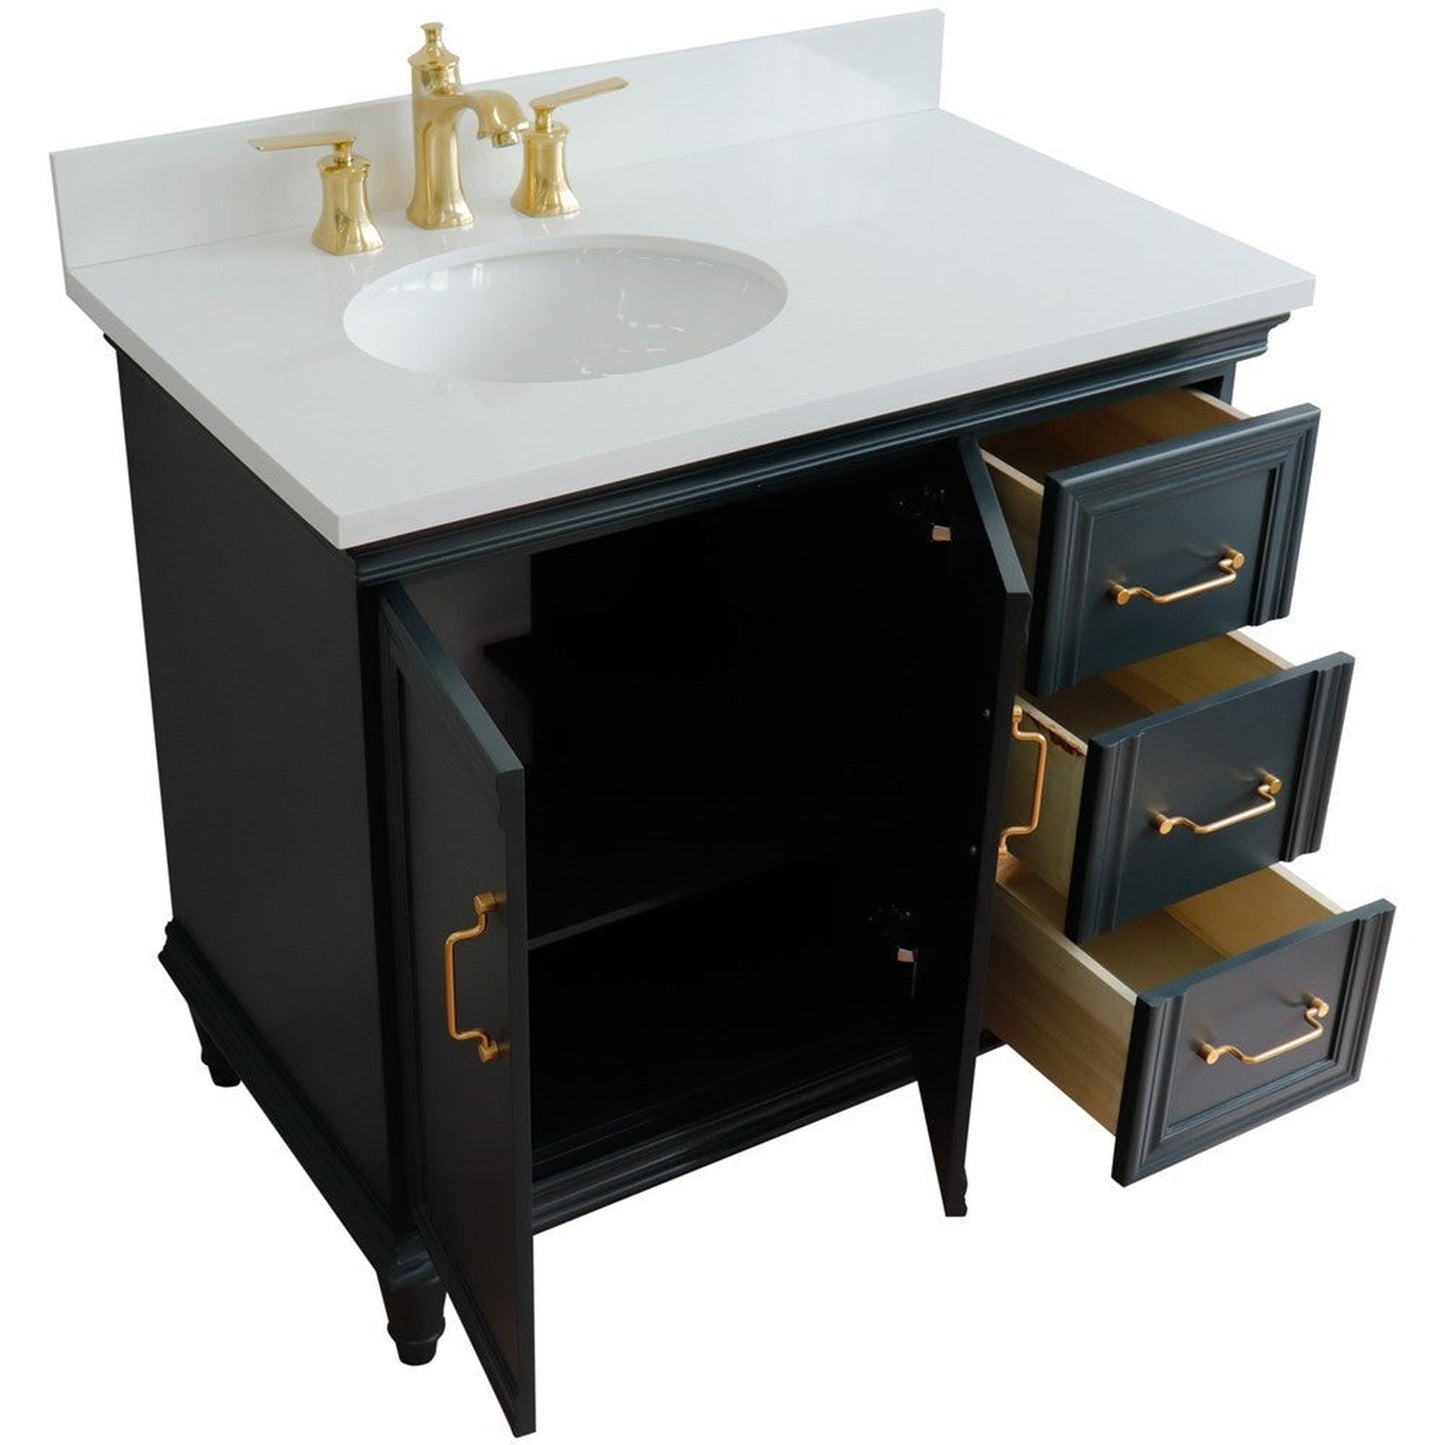 Bellaterra Home Forli 37" 2-Door 3-Drawer Dark Gray Freestanding Vanity Set With Ceramic Left Offset Undermount Oval Sink and White Quartz Top, and Left Door Cabinet